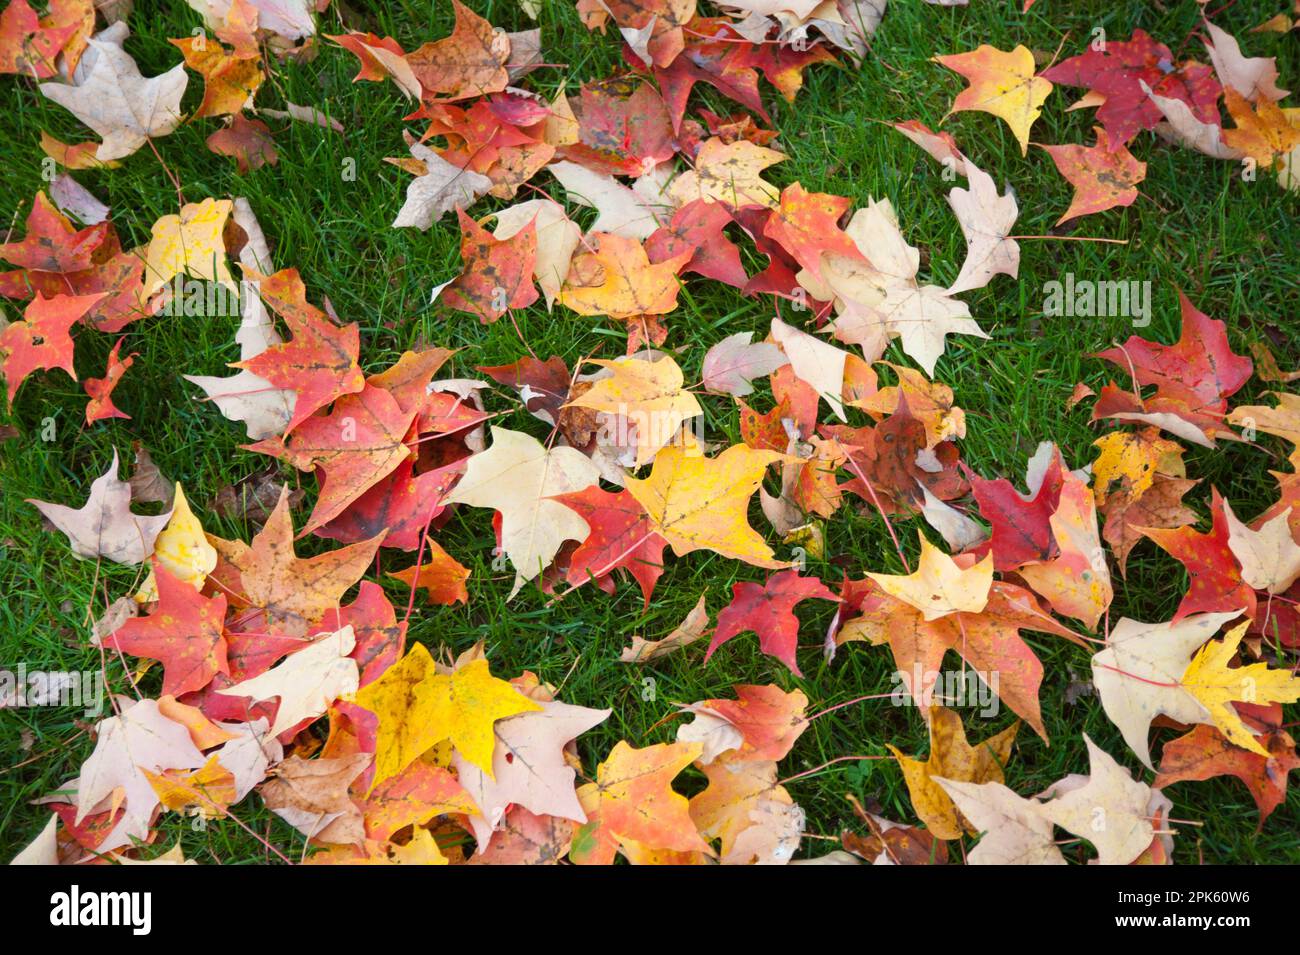 Bunte Blätter liegen im Gras Stockfoto